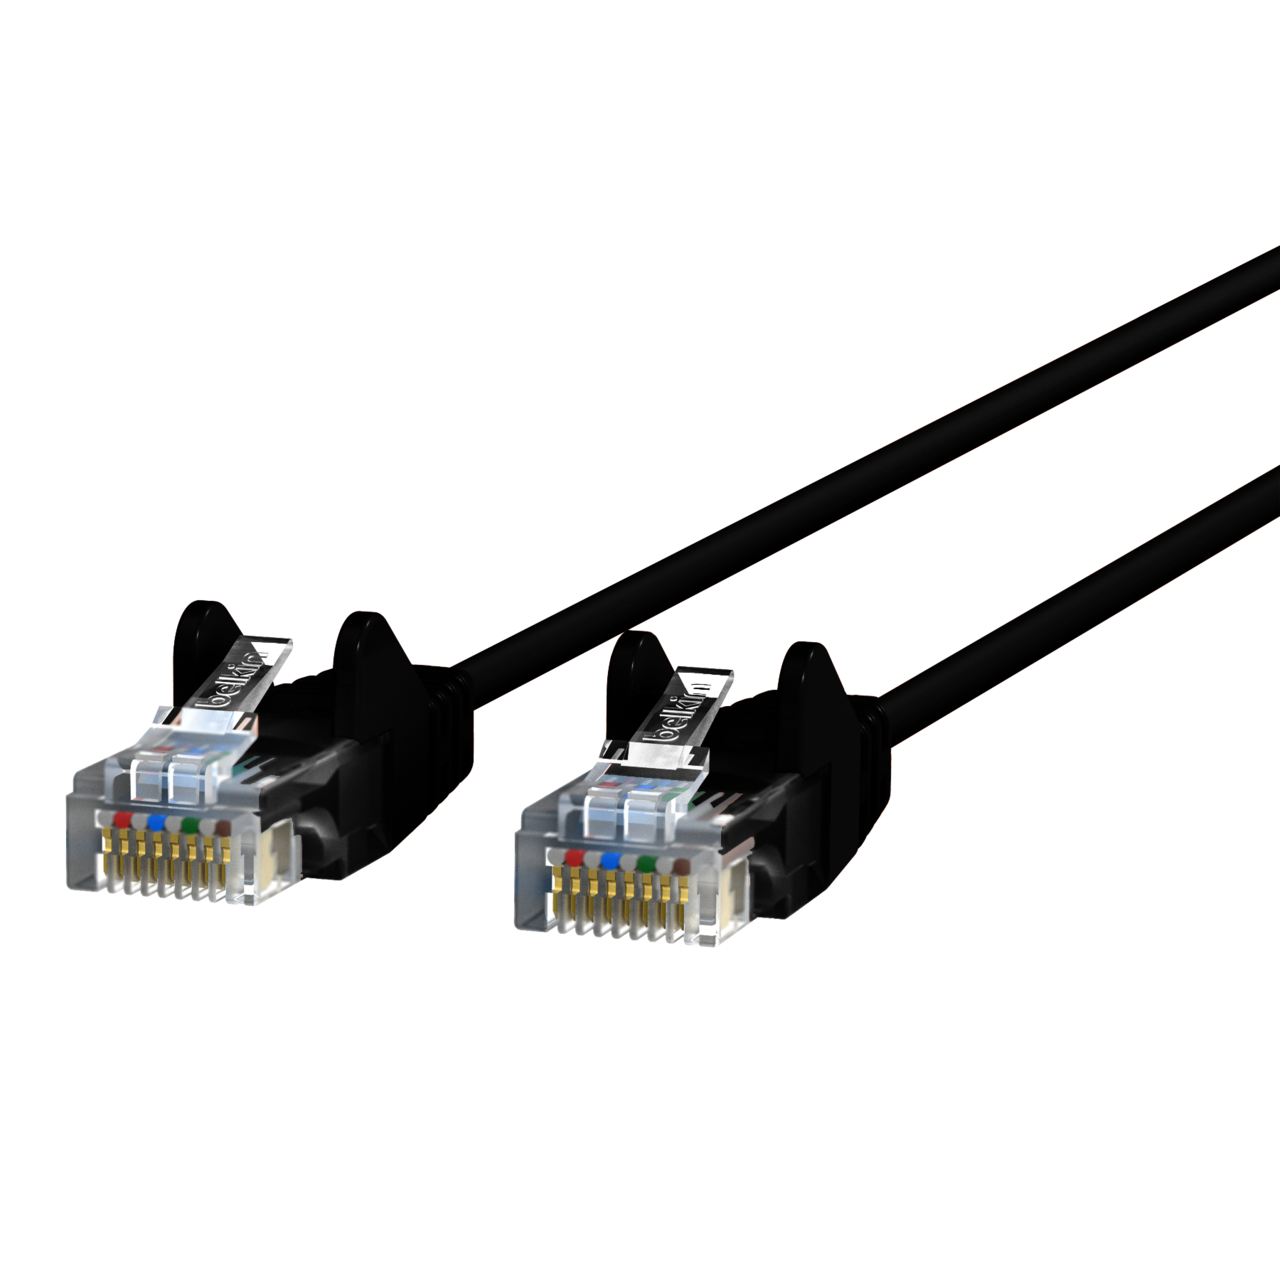 Cat5e Patch Câble Jaune Rj45m/rj45m Belkin cables A3l791-06-ylw-s 6 ft environ 1.83 m 